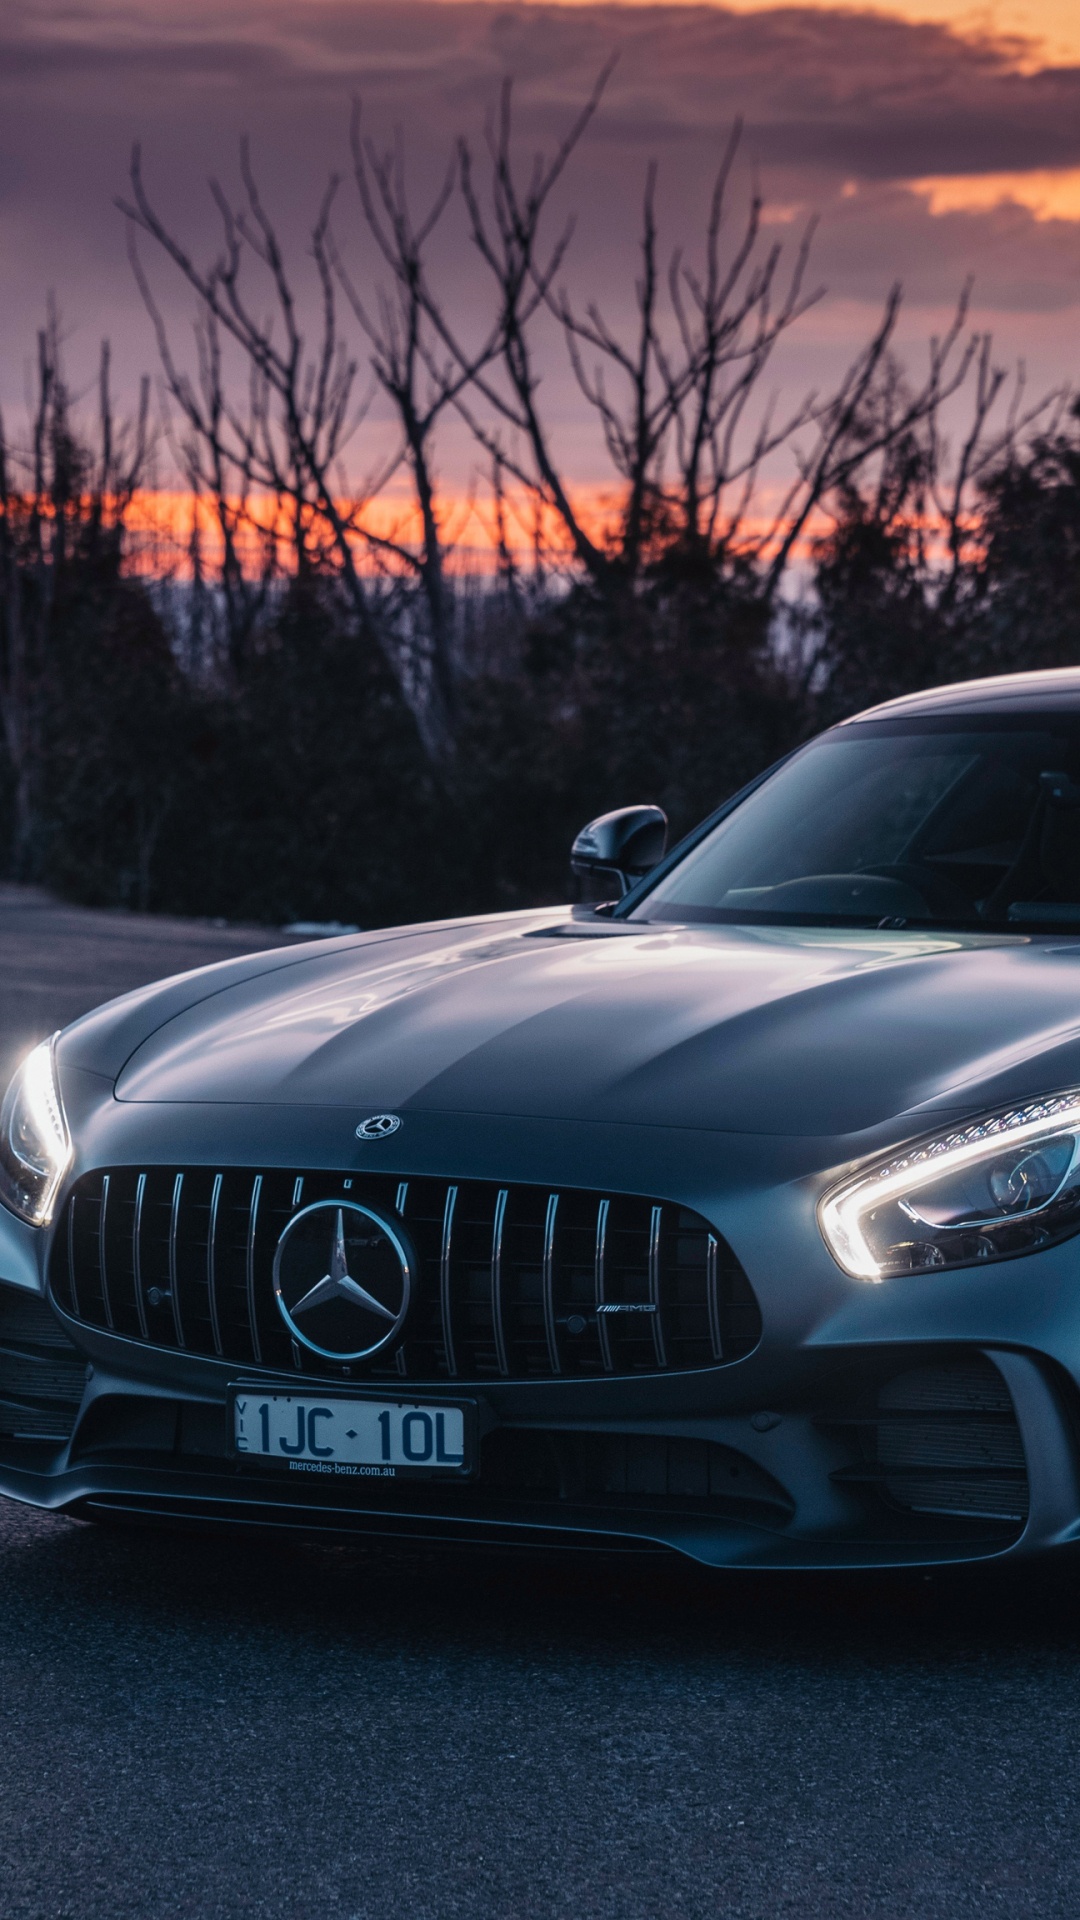 Schwarzes Mercedes-benz-coupé Unterwegs Bei Sonnenuntergang. Wallpaper in 1080x1920 Resolution